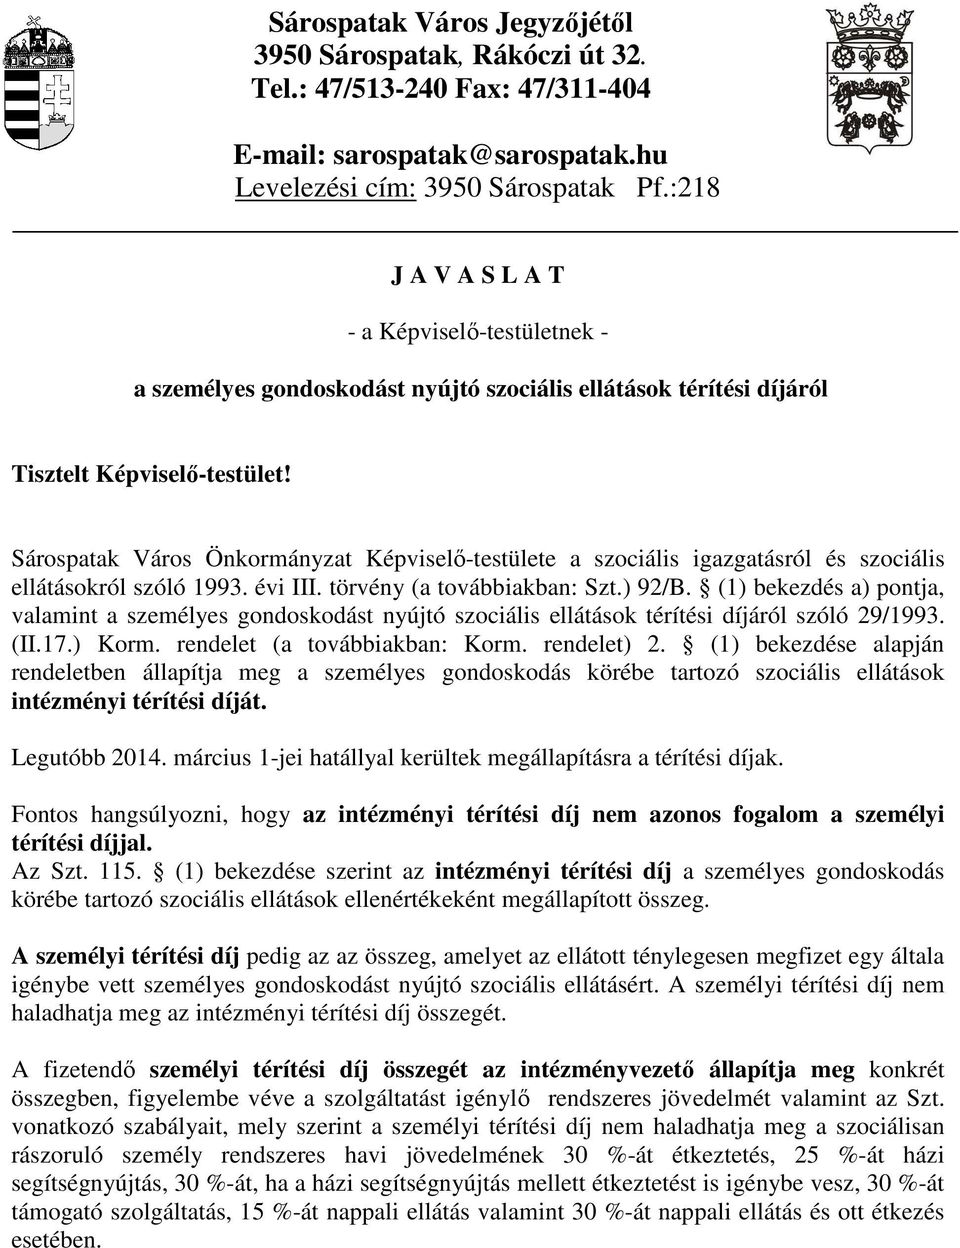 Sárospatak Város Önkormányzat Képviselő-testülete a szociális igazgatásról és szociális ellátásokról szóló 1993. évi III. törvény (a továbbiakban: Szt.) 92/B.